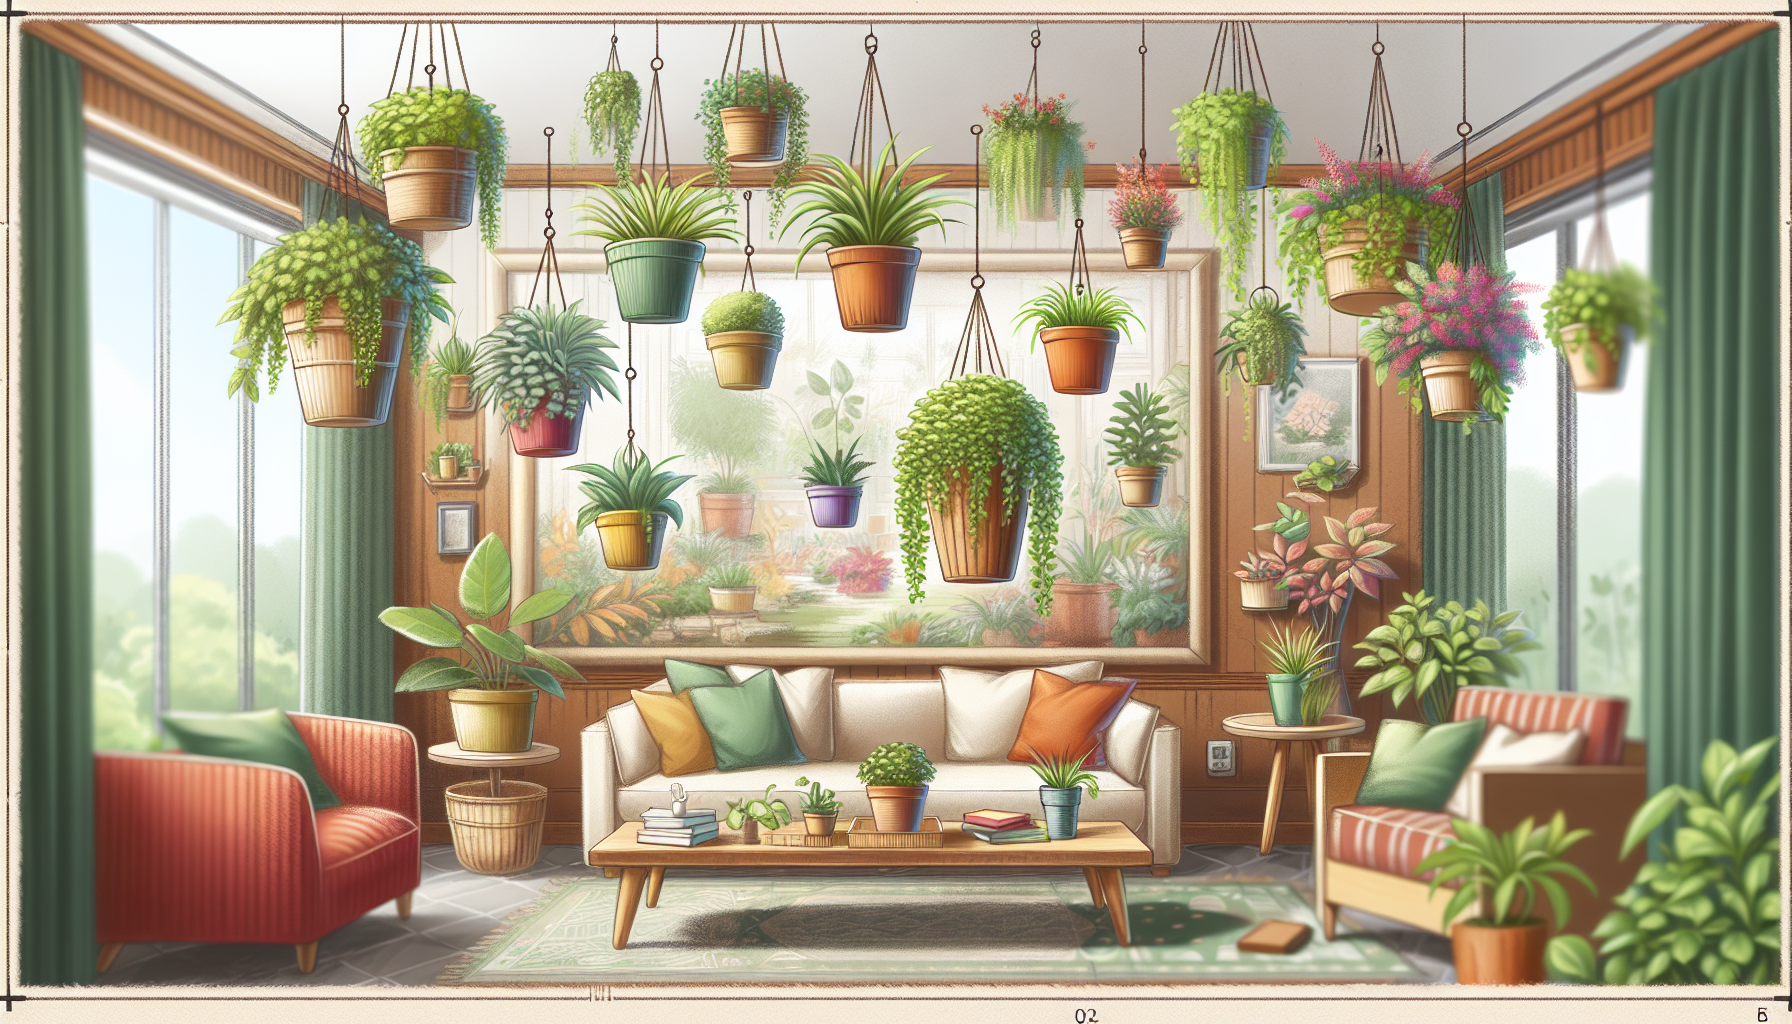 Macetas colgantes con plantas vibrantes para añadir vida y color a tu hogar.